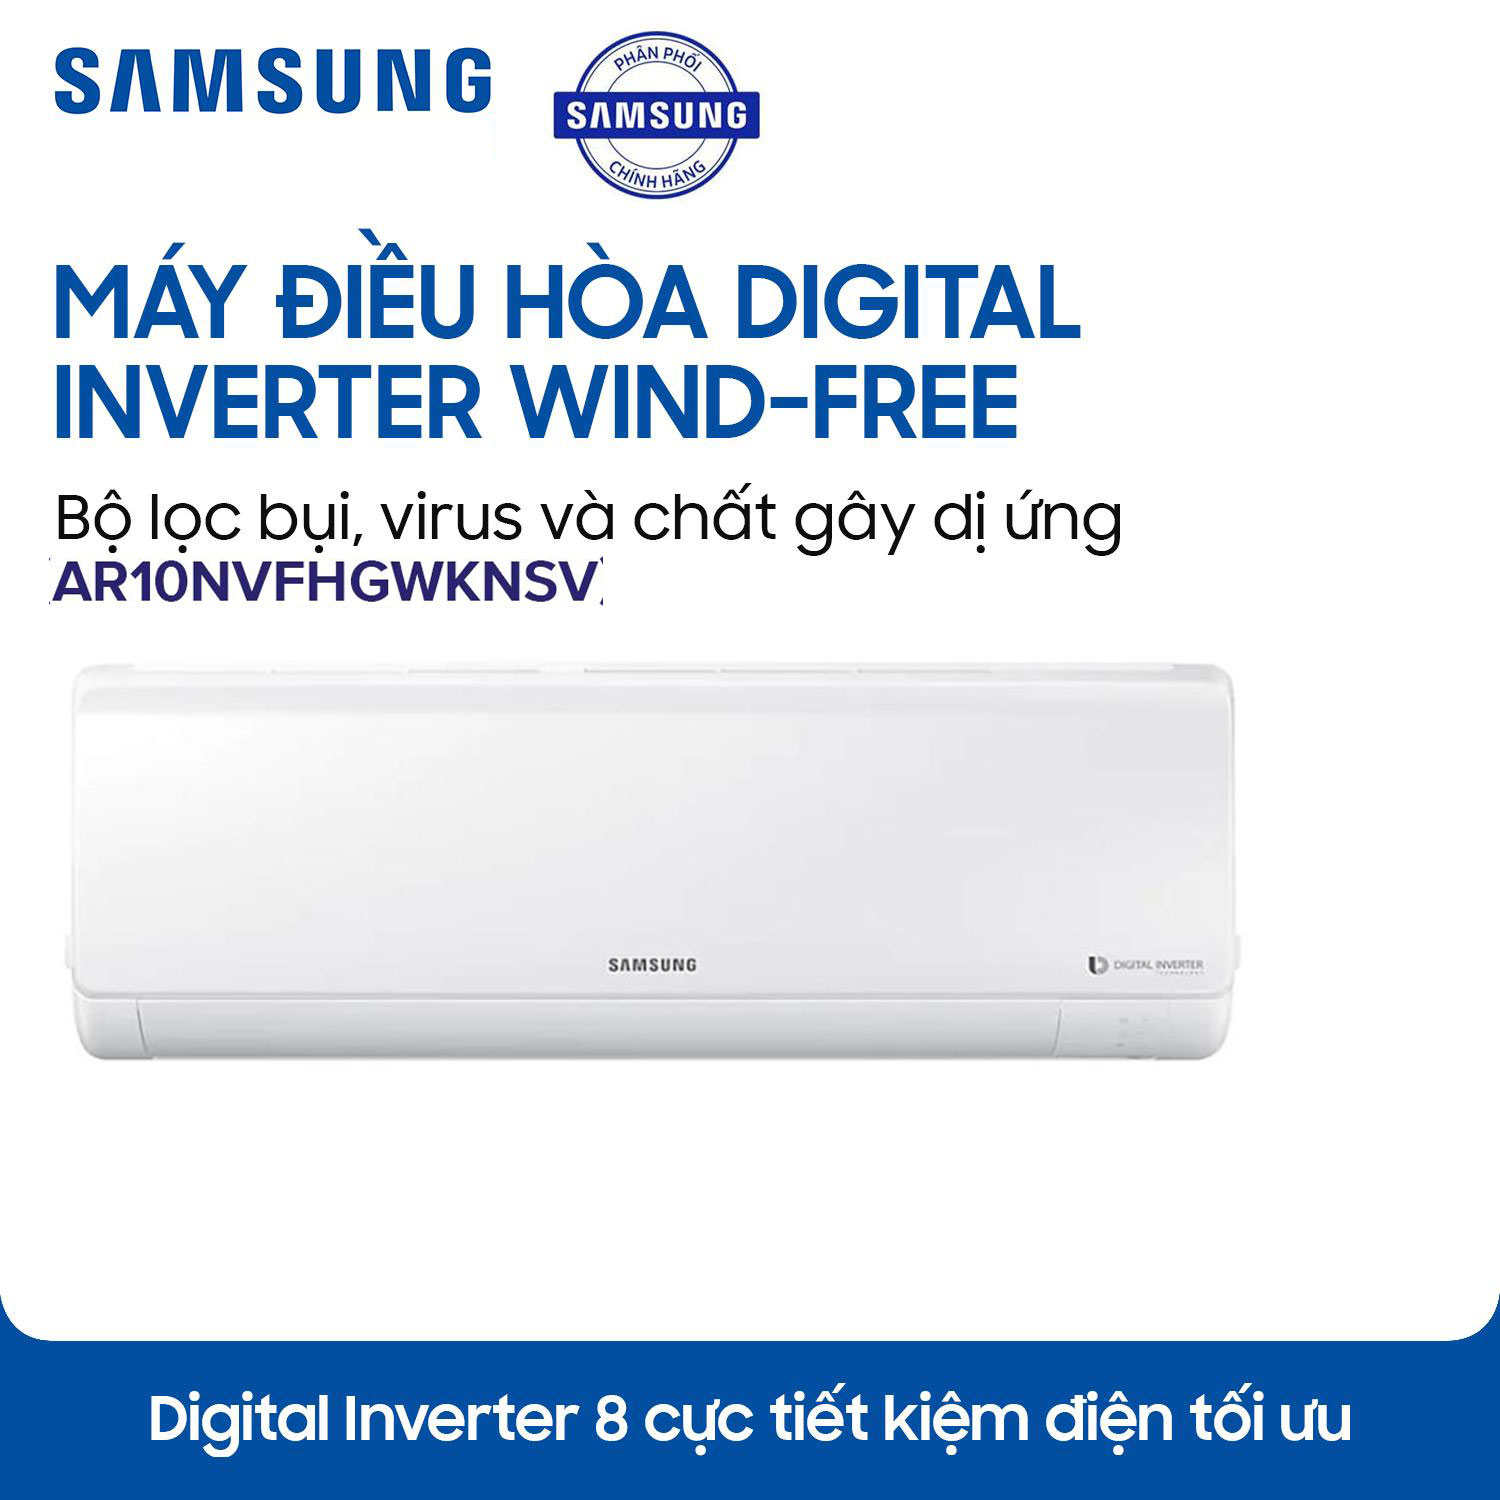 Máy lạnh Samsung Inverter AR10NVFHGWKNSV 1 HP chính hãng thanh lý giá rẻ. Điện Lạnh Nguyễn Khánh cung cấp Máy lạnh Samsung Inverter AR10NVFHGWKNSV 1 HP